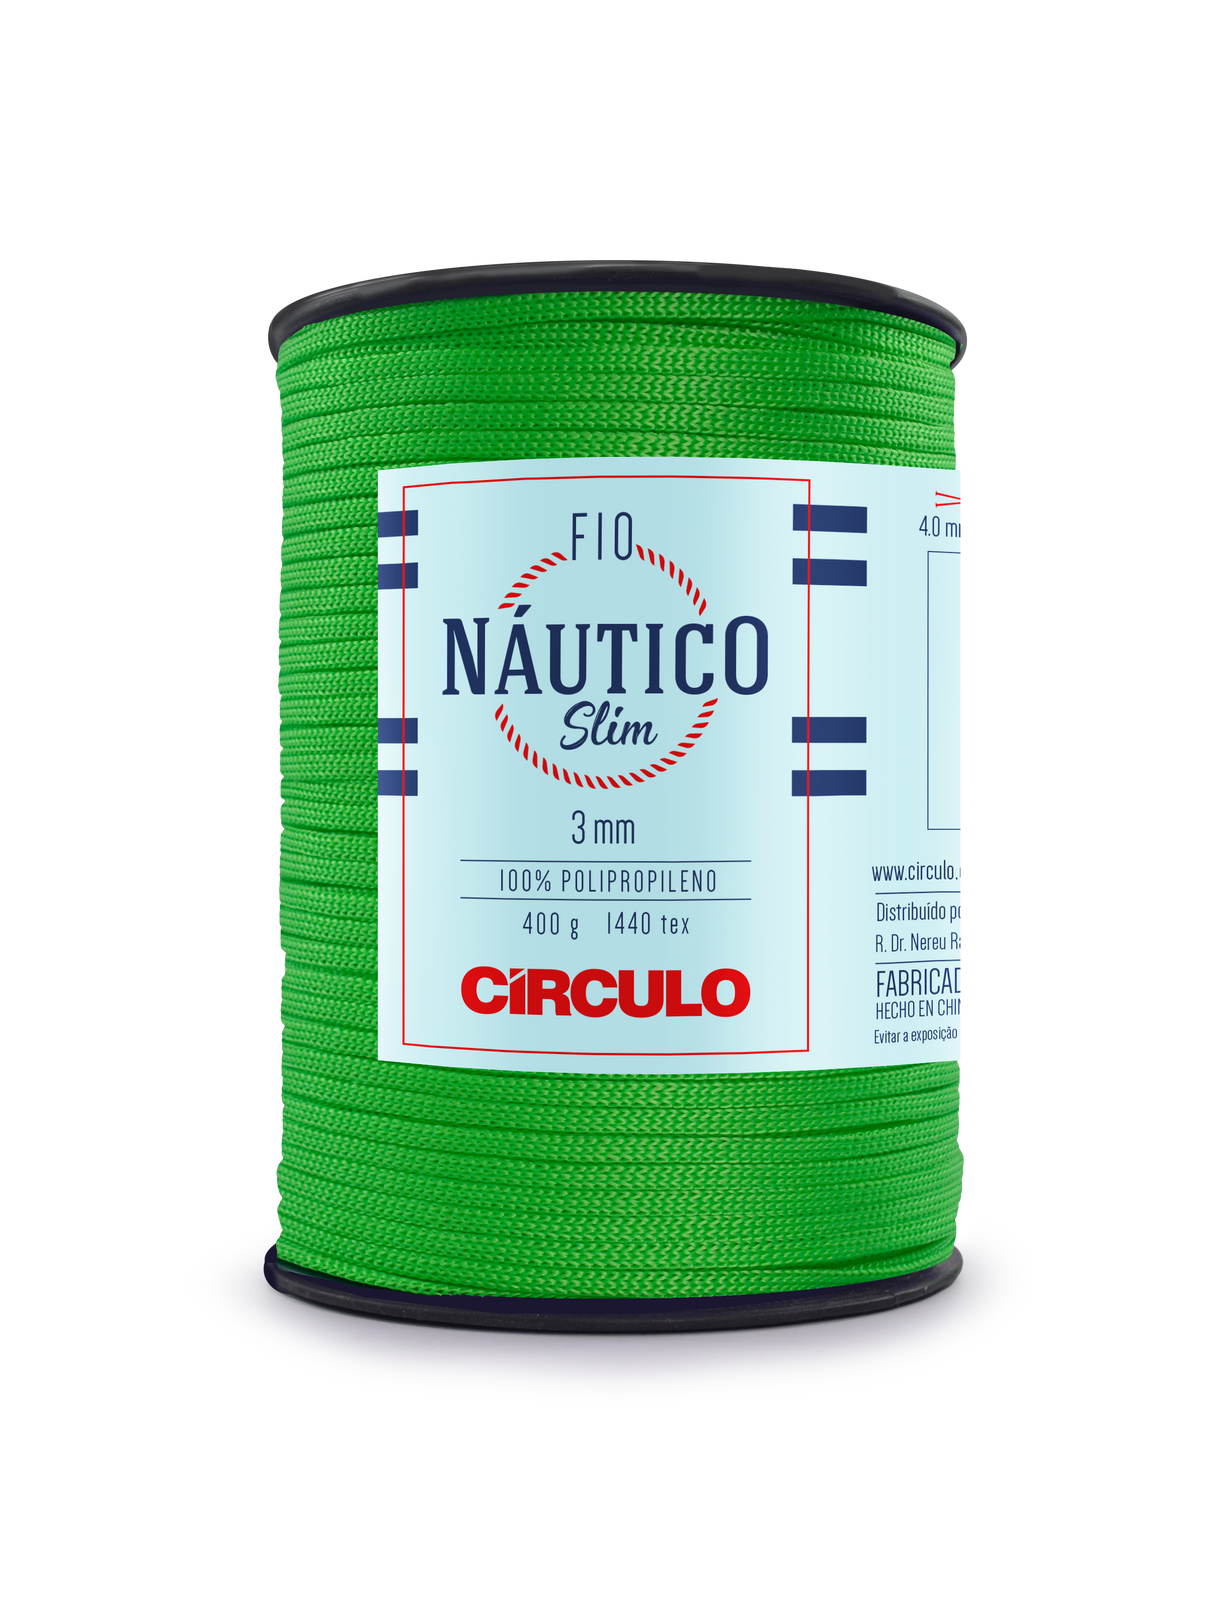 Circulo Fio Nautico Slim 3 mm color 5247